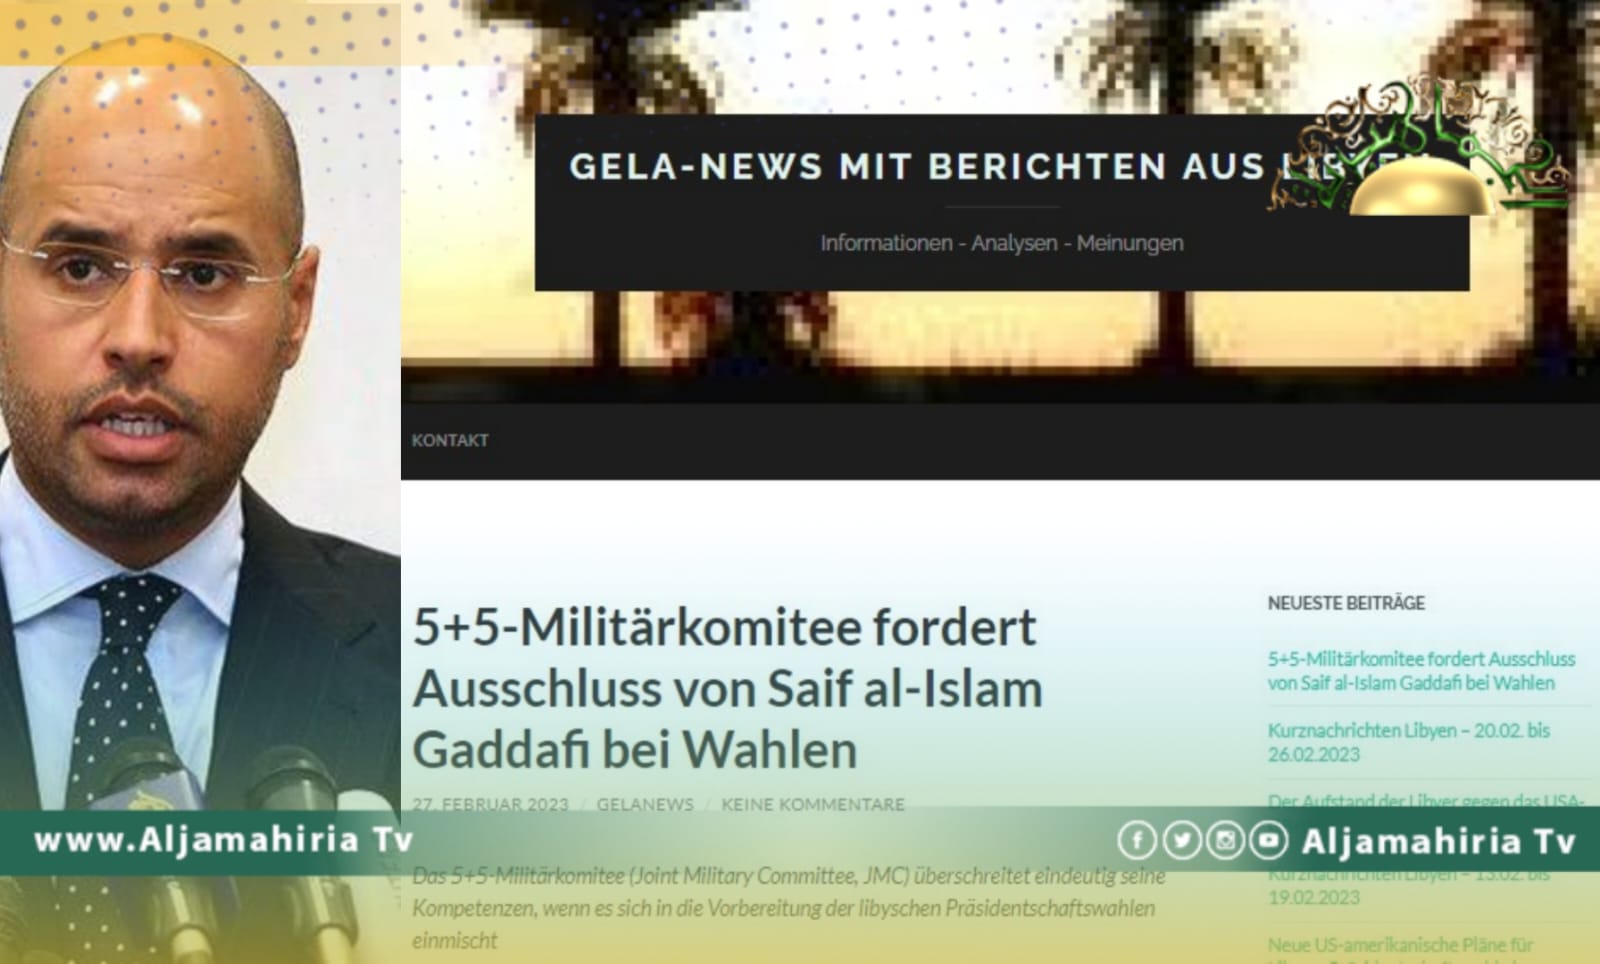 موقع ألماني يكشف عن مؤامرة لجنة 5+5 لمنع سيف الإسلام من الترشح للانتخابات